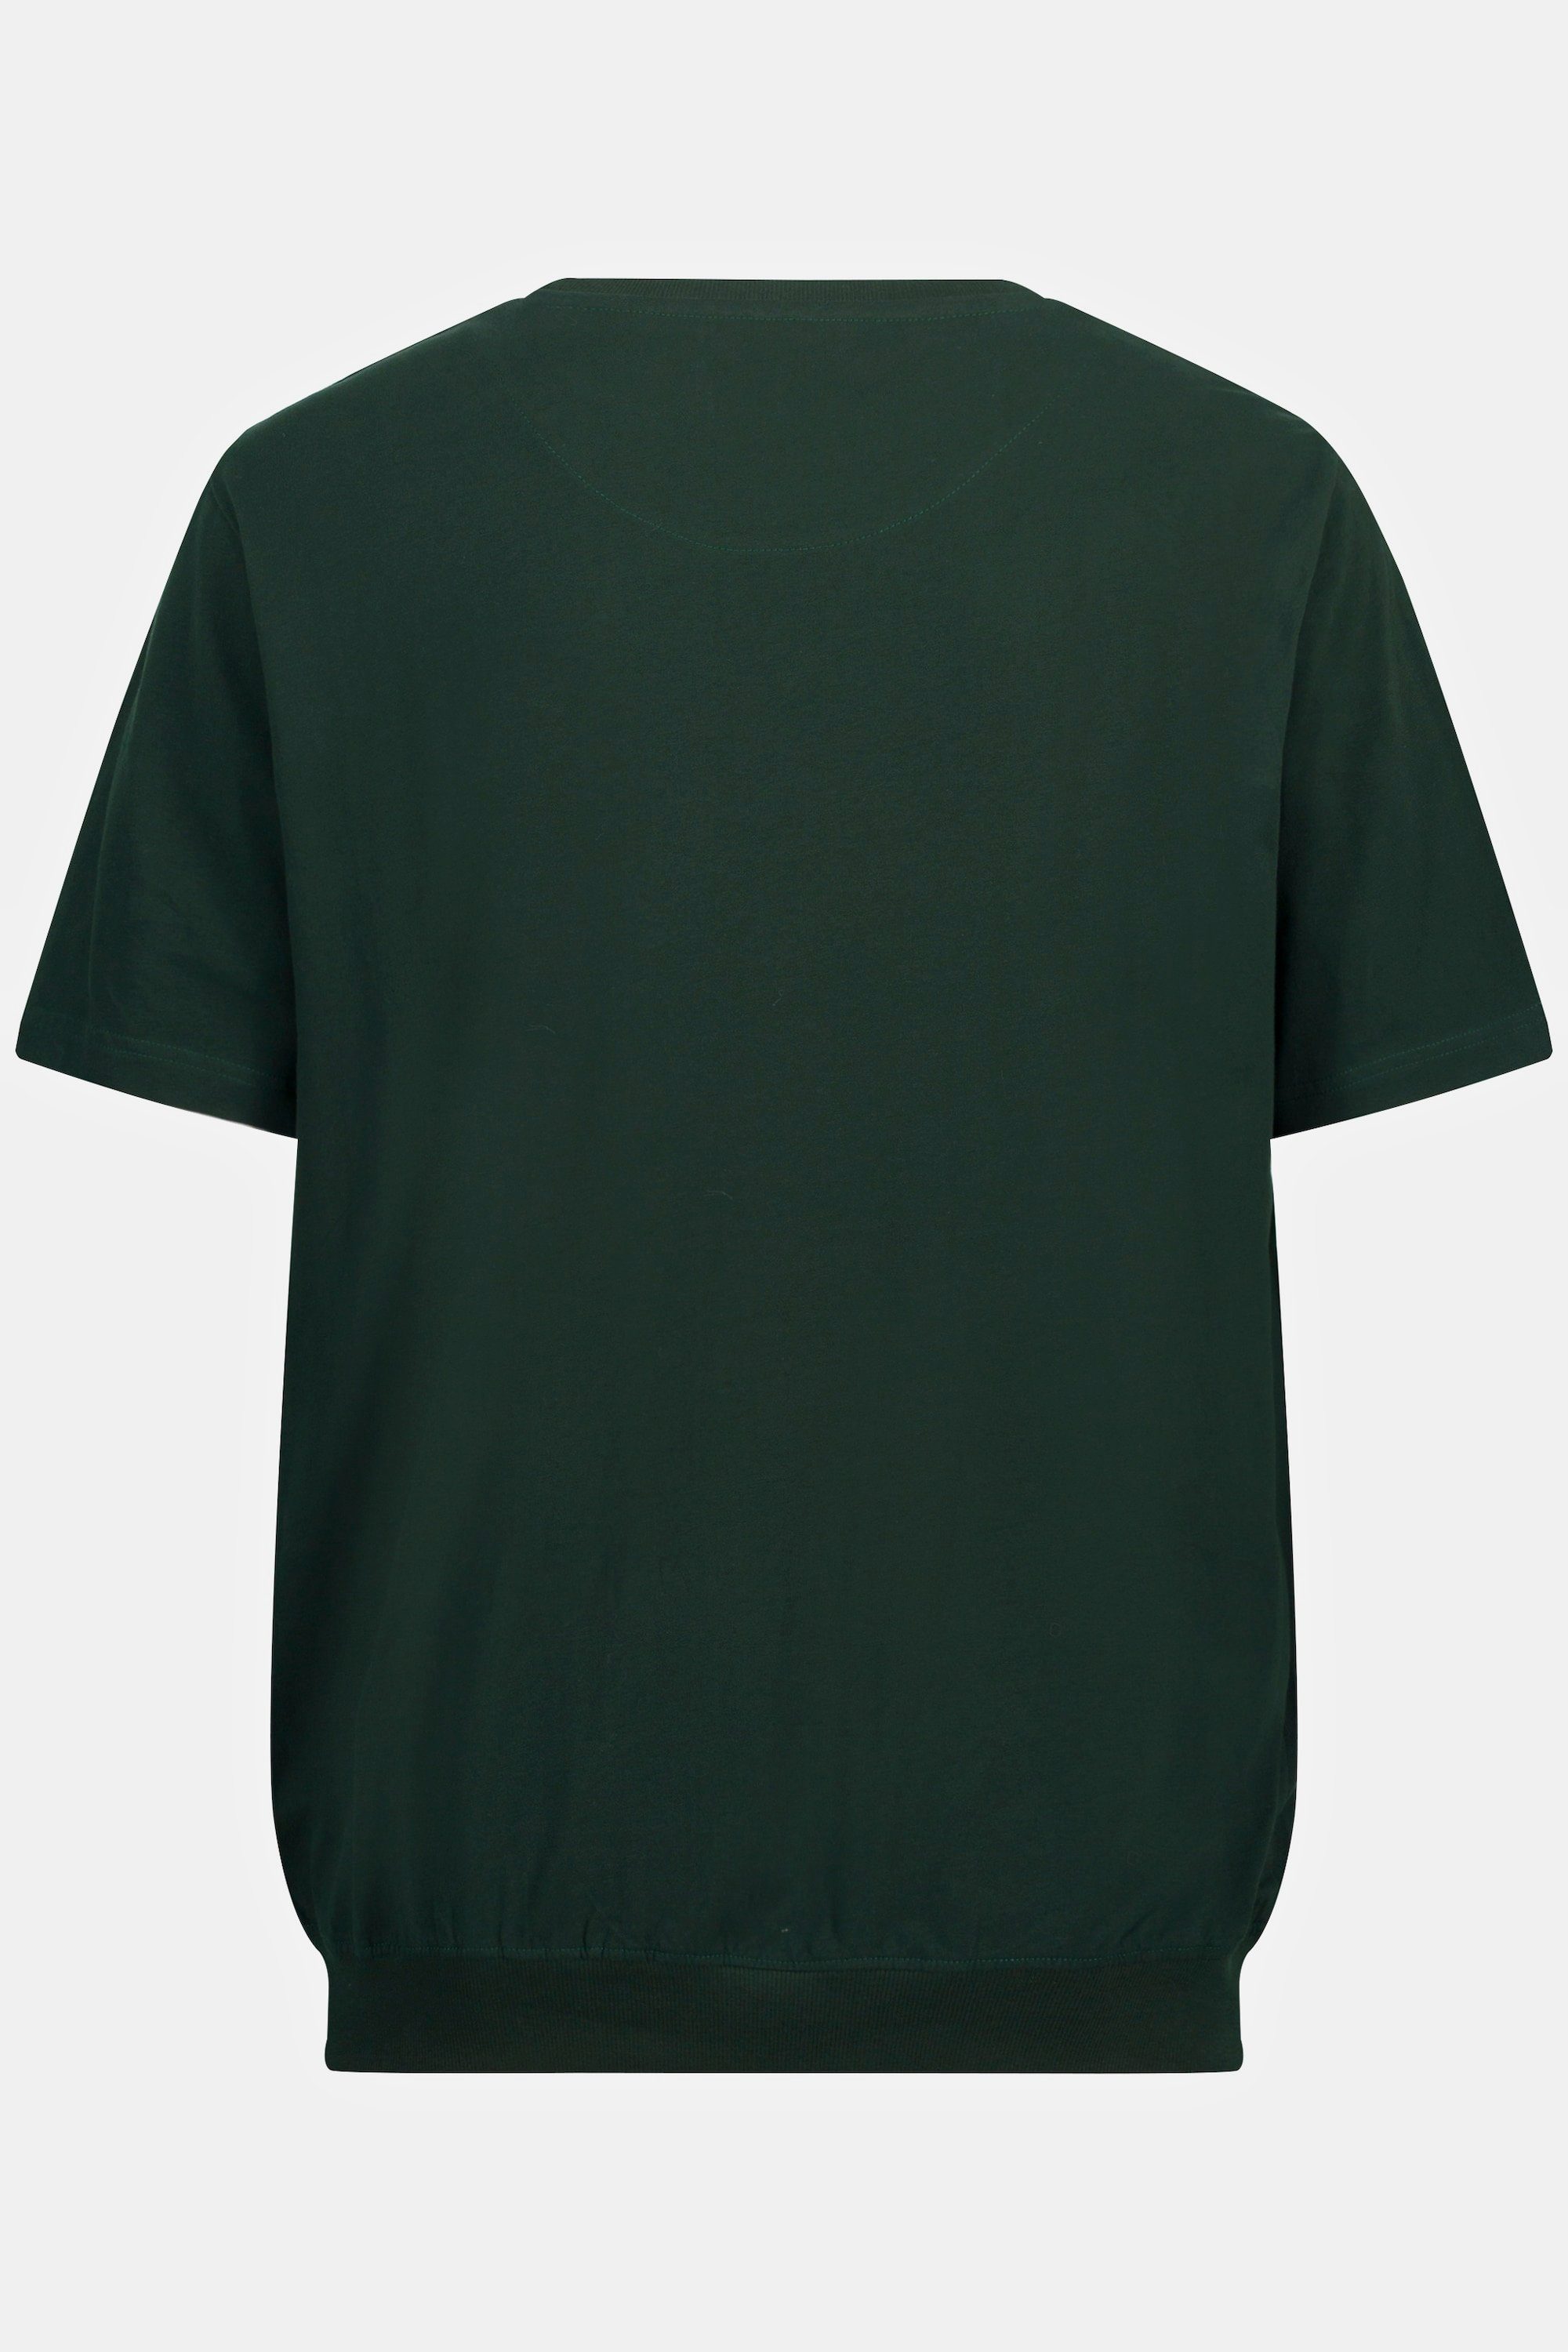 JP1880 bis 10XL T-Shirt XXL Basic T-Shirt Bauchfit Halbarm tannengrün